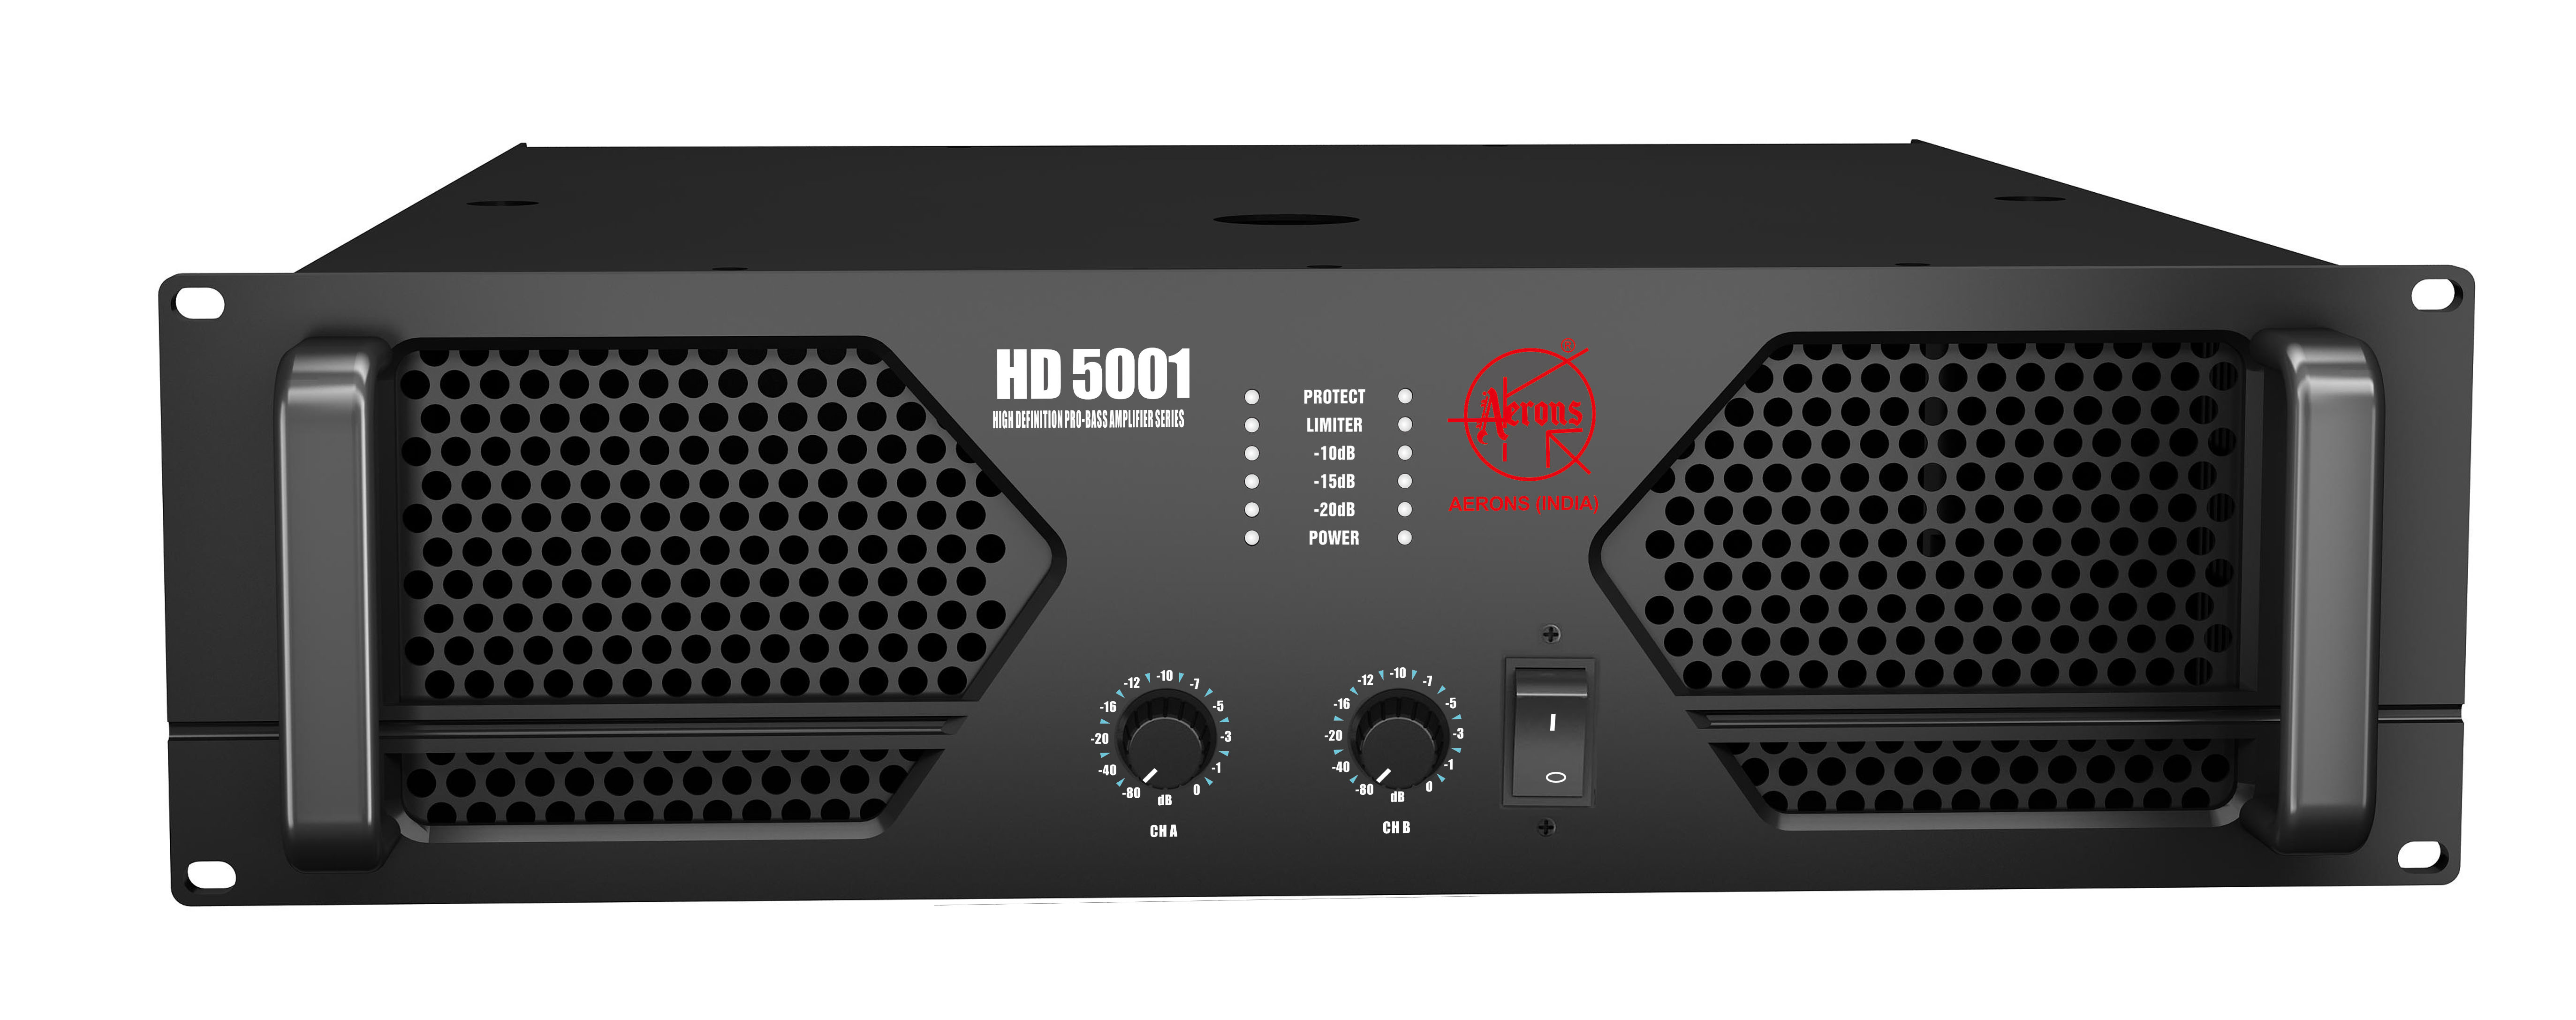 HD 5001